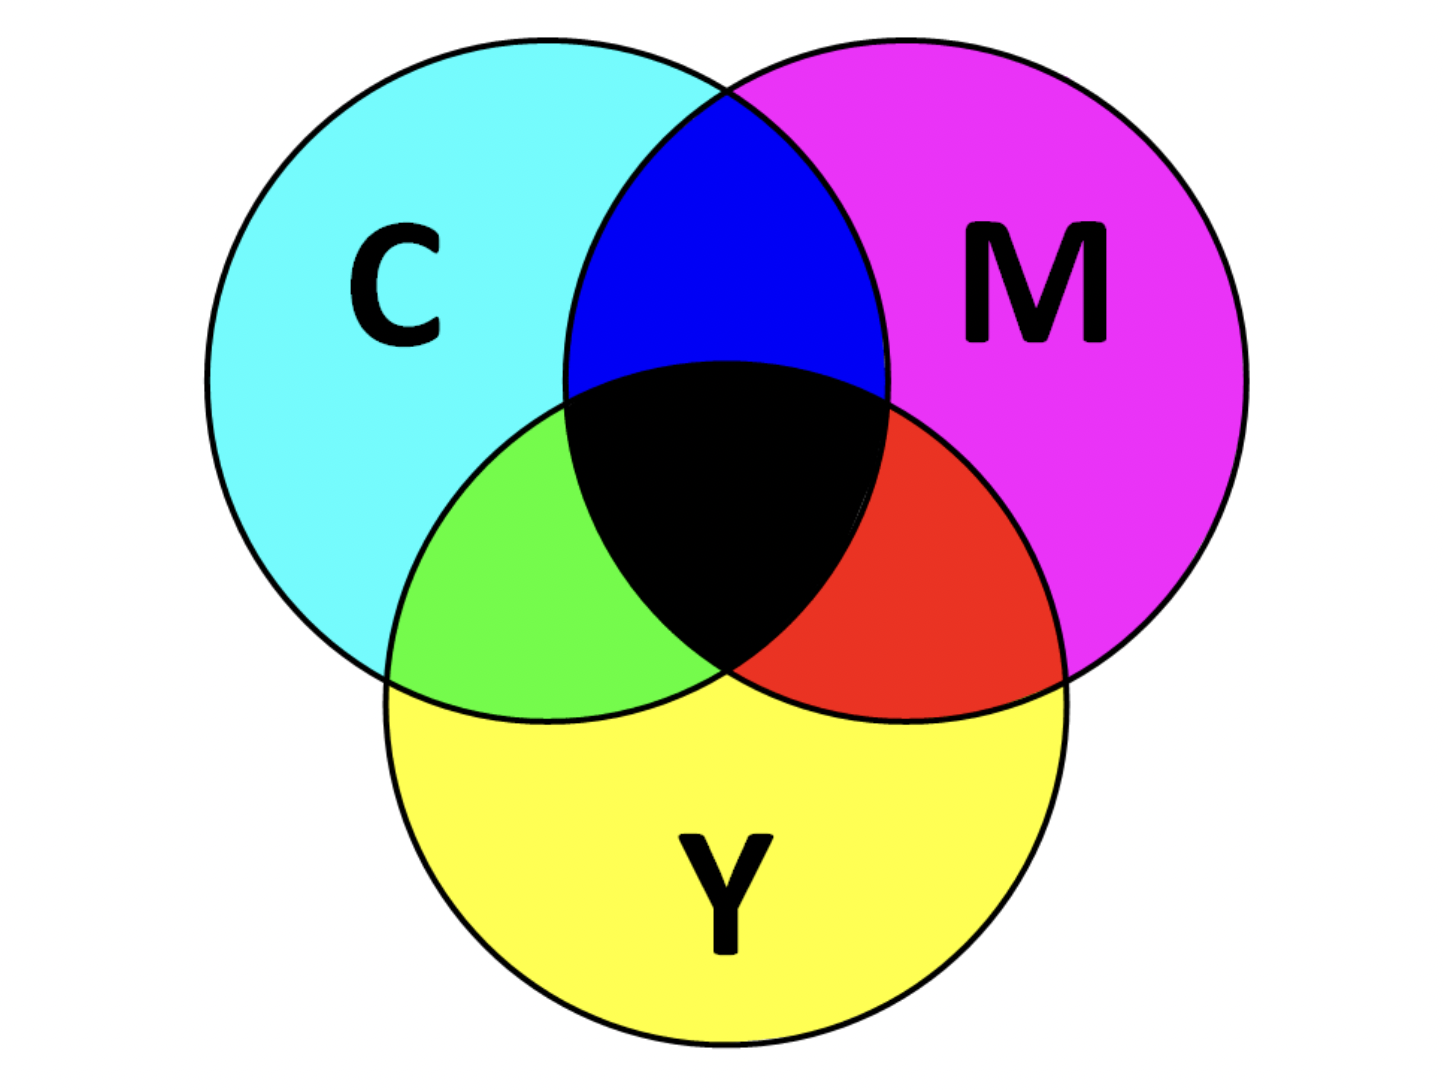 Цветовая модель название. Цветовая модель ЦМИК. Цветовая модель Смук. Модель Смук цвета. Субтрактивная цветовая модель CMYK.